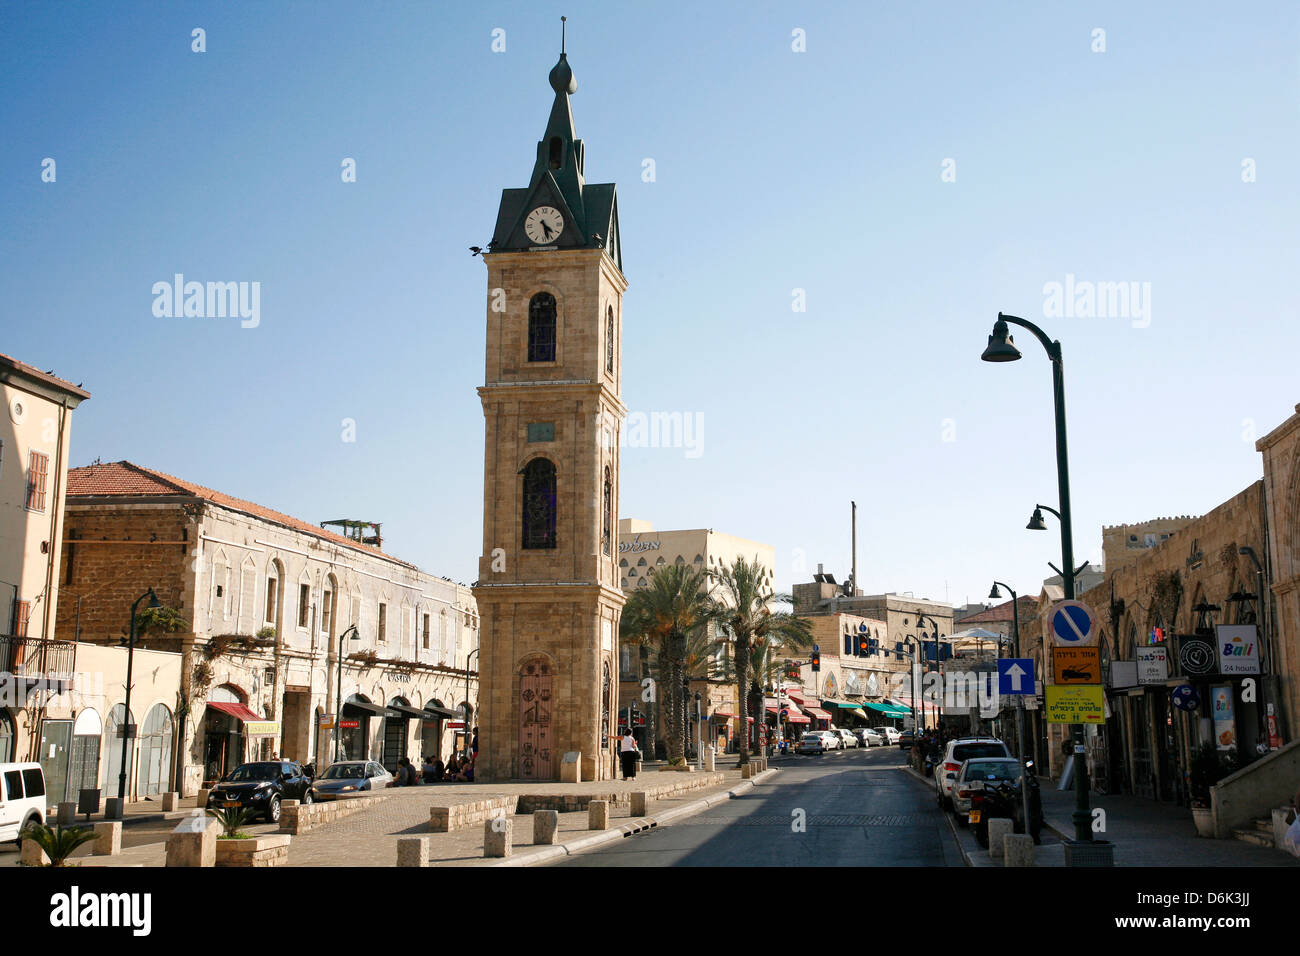 La tour de l'horloge dans la vieille ville de Jaffa, Tel Aviv, Israël, Moyen Orient Banque D'Images